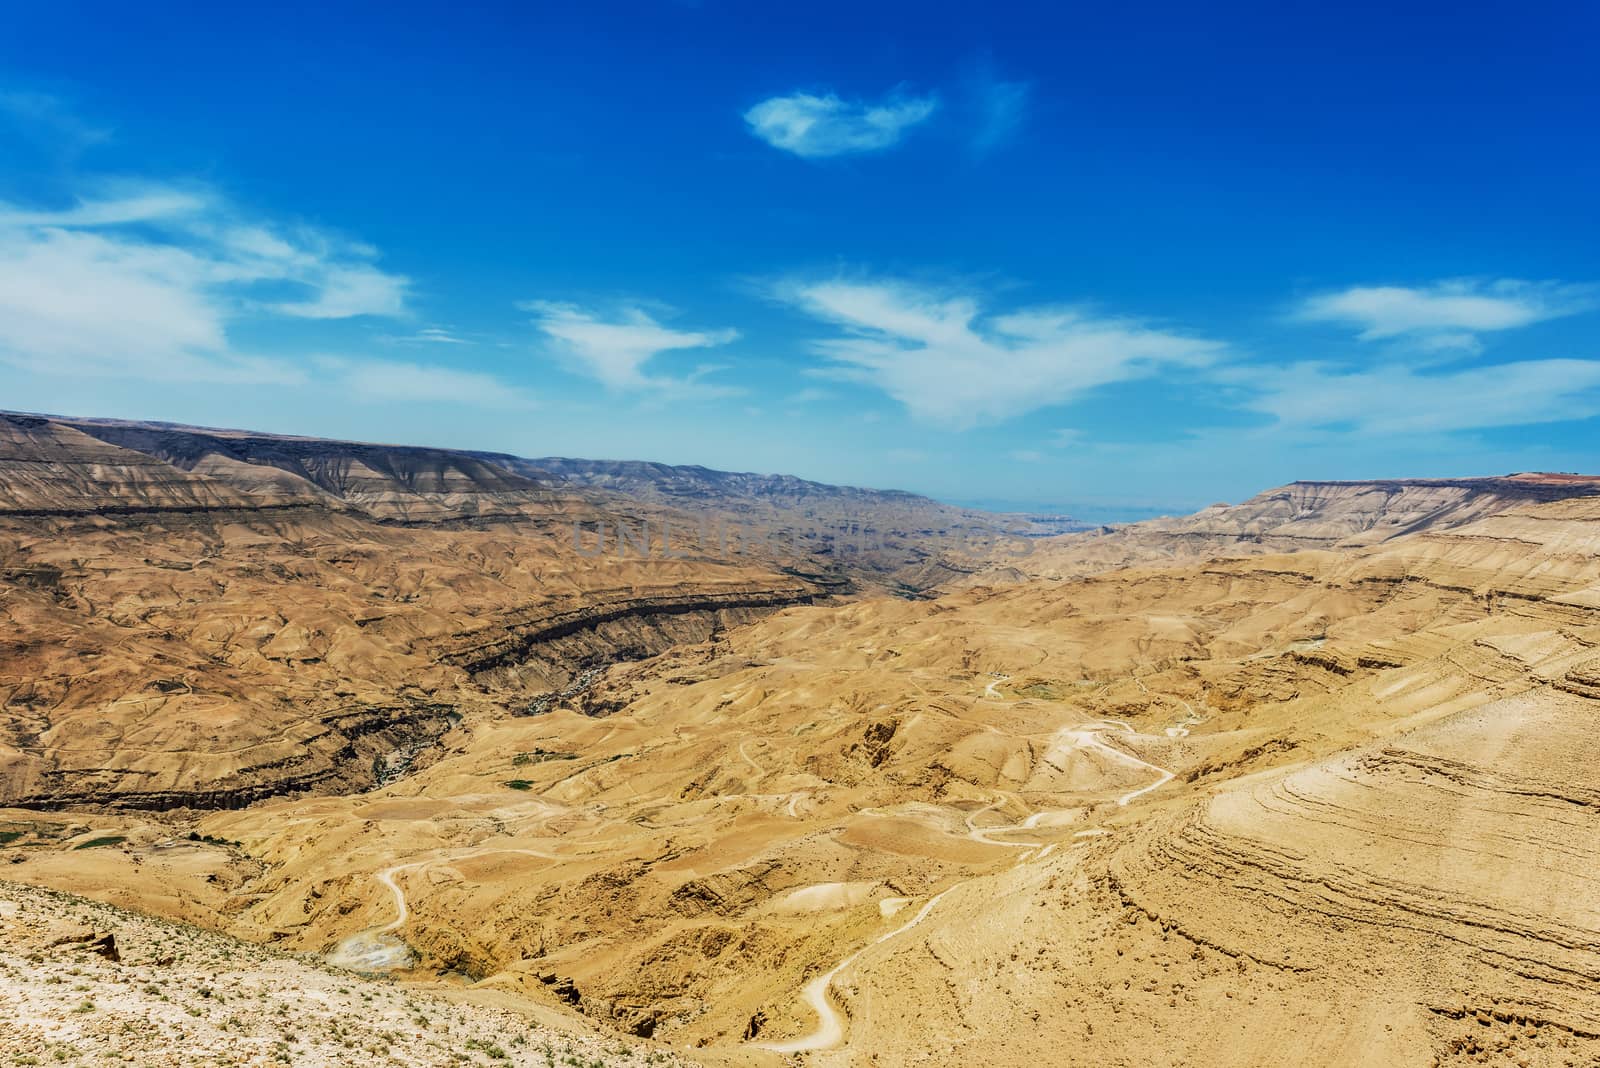 kings way desert road Dead Sea Jordan by PIXSTILL